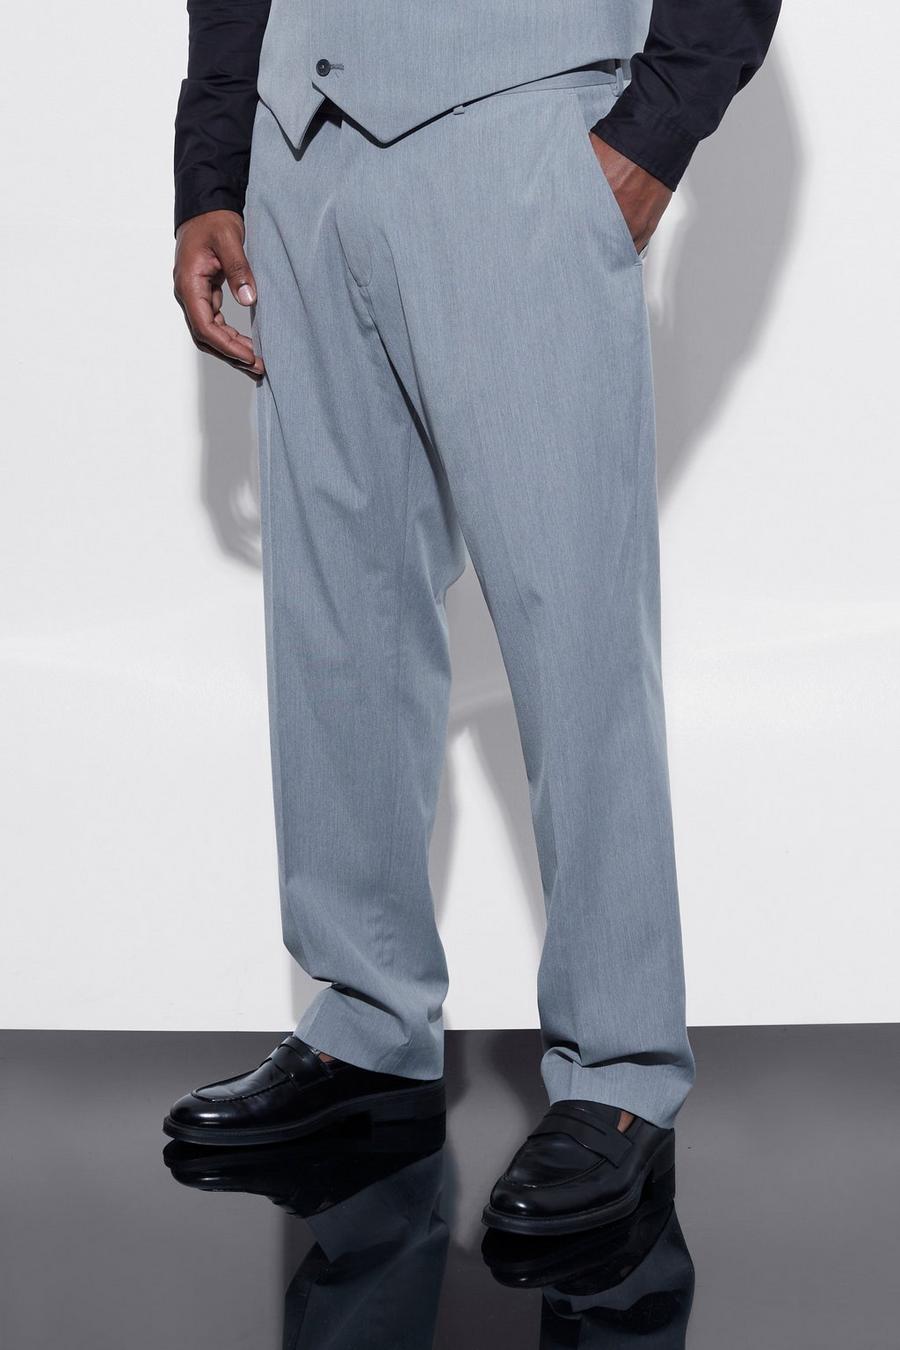 אפור gris מכנסי חליפה בגזרה צרה, מידות גדולות